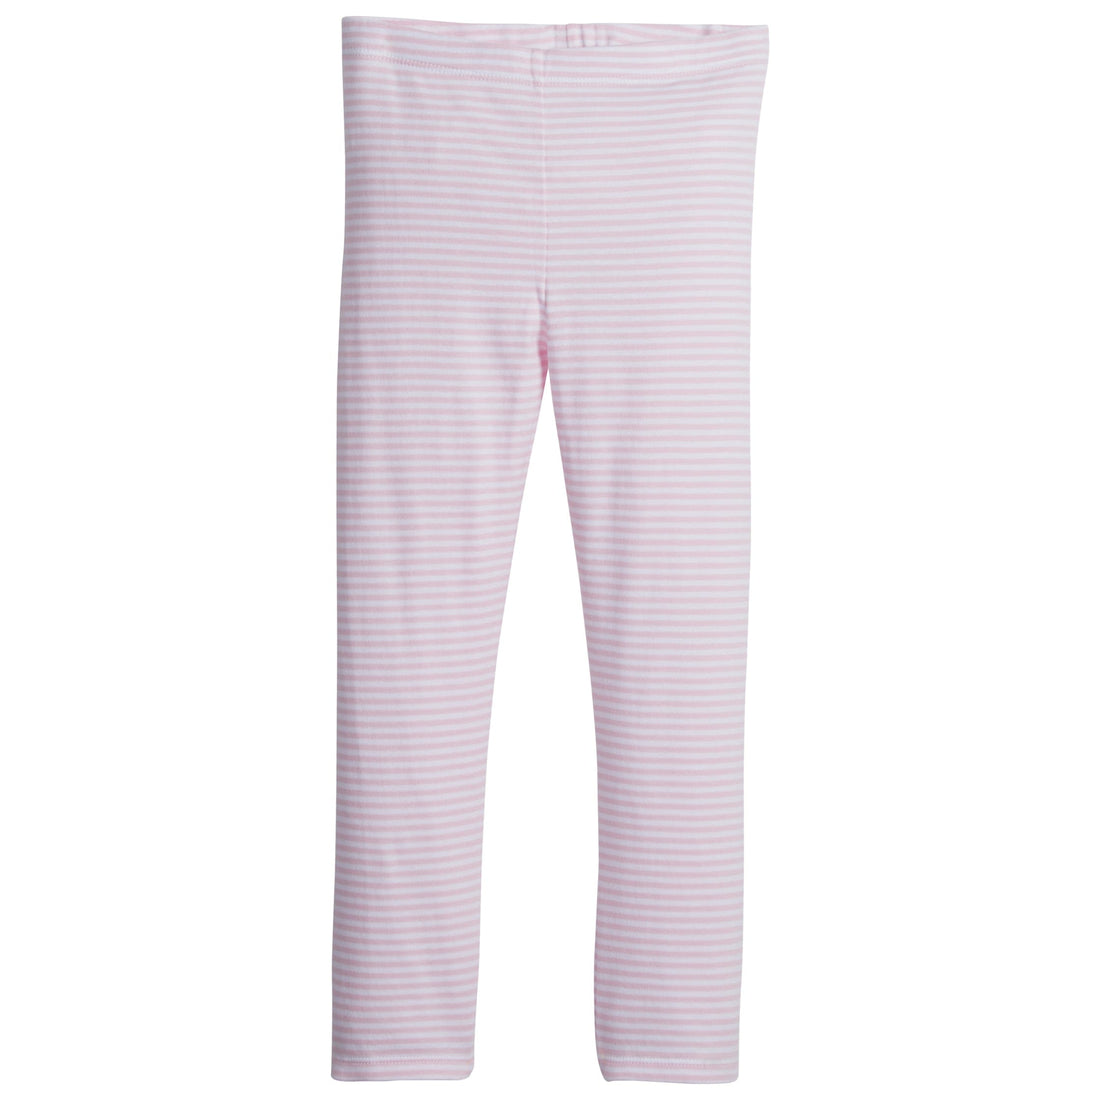 Leggings Light Pink Stripe